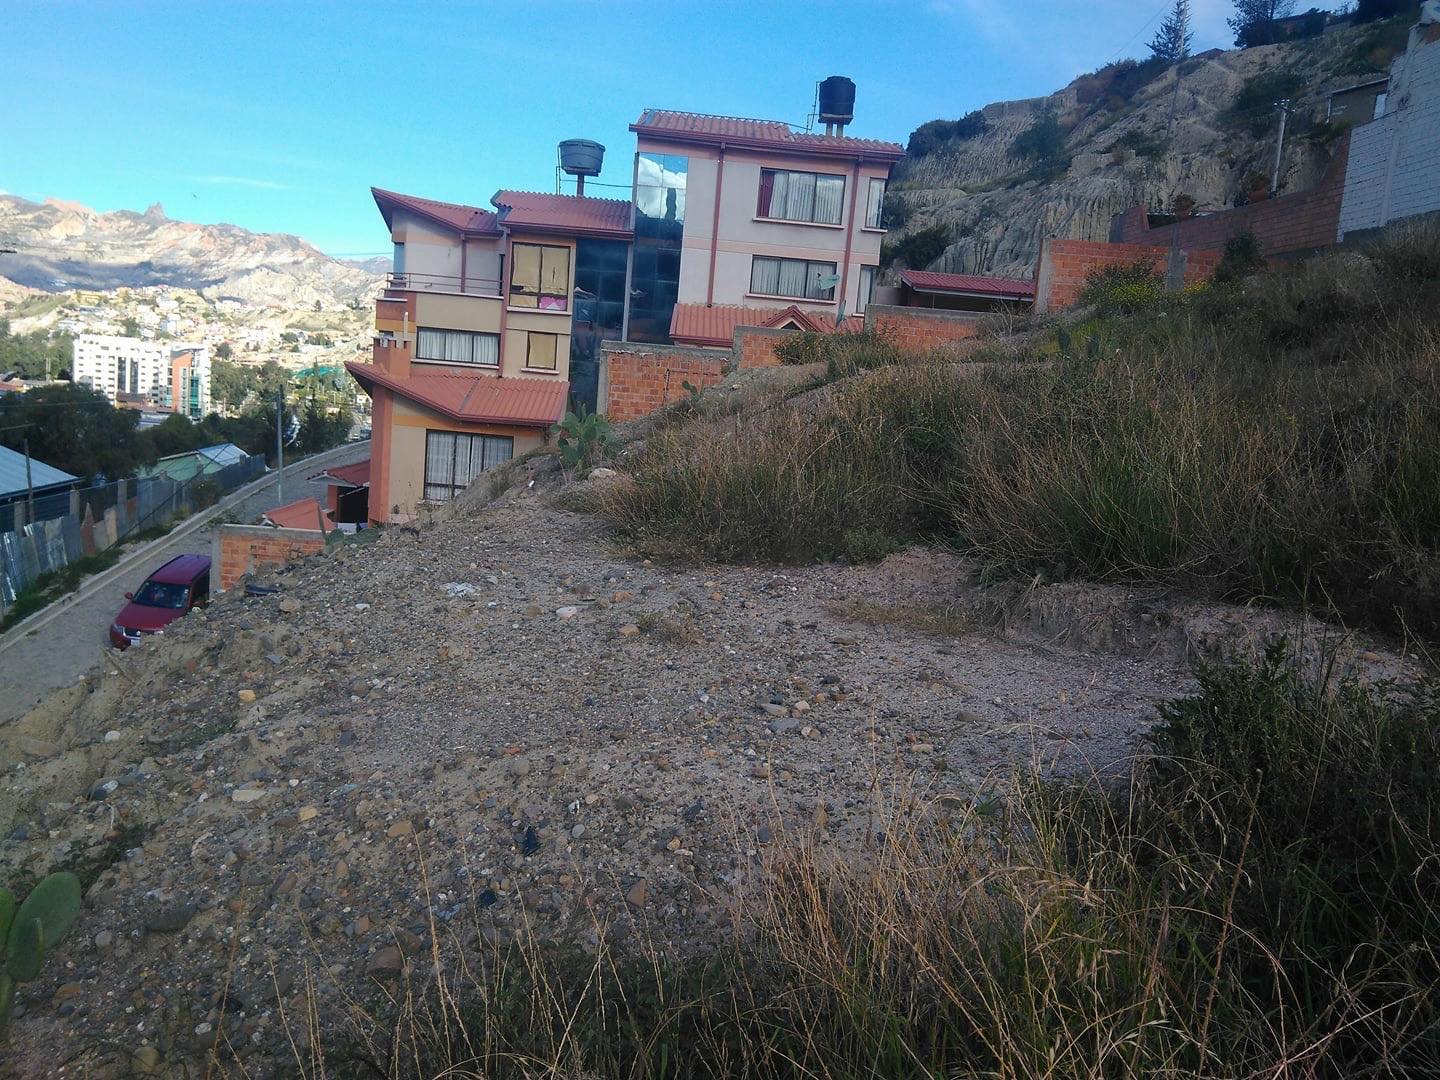 Terreno en Obrajes en La Paz    Foto 1